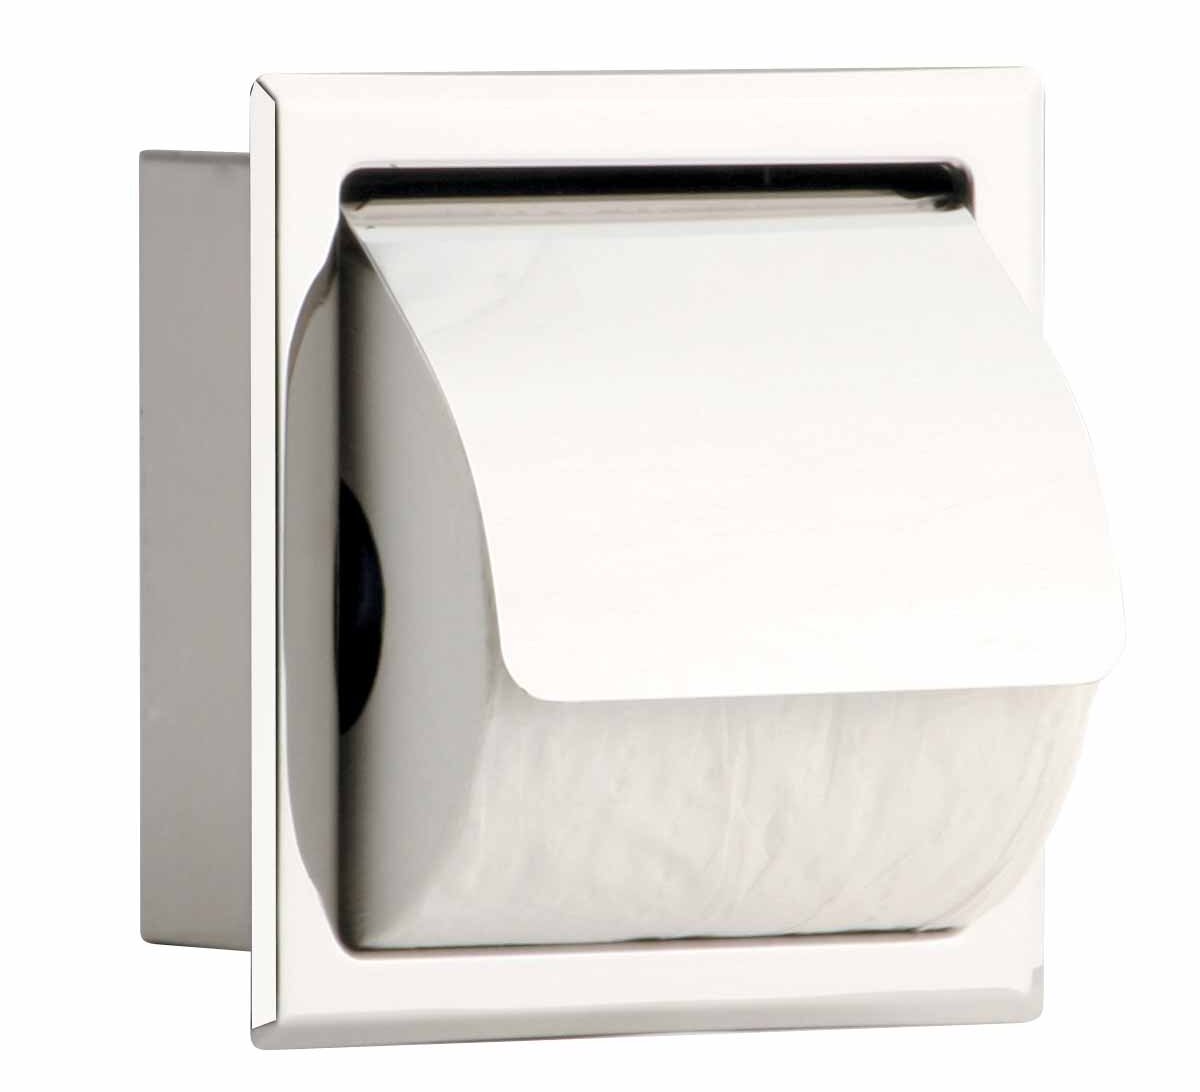 https://assets.wfcdn.com/im/83991751/compr-r85/7510/75109779/recessed-toilet-paper-holder.jpg